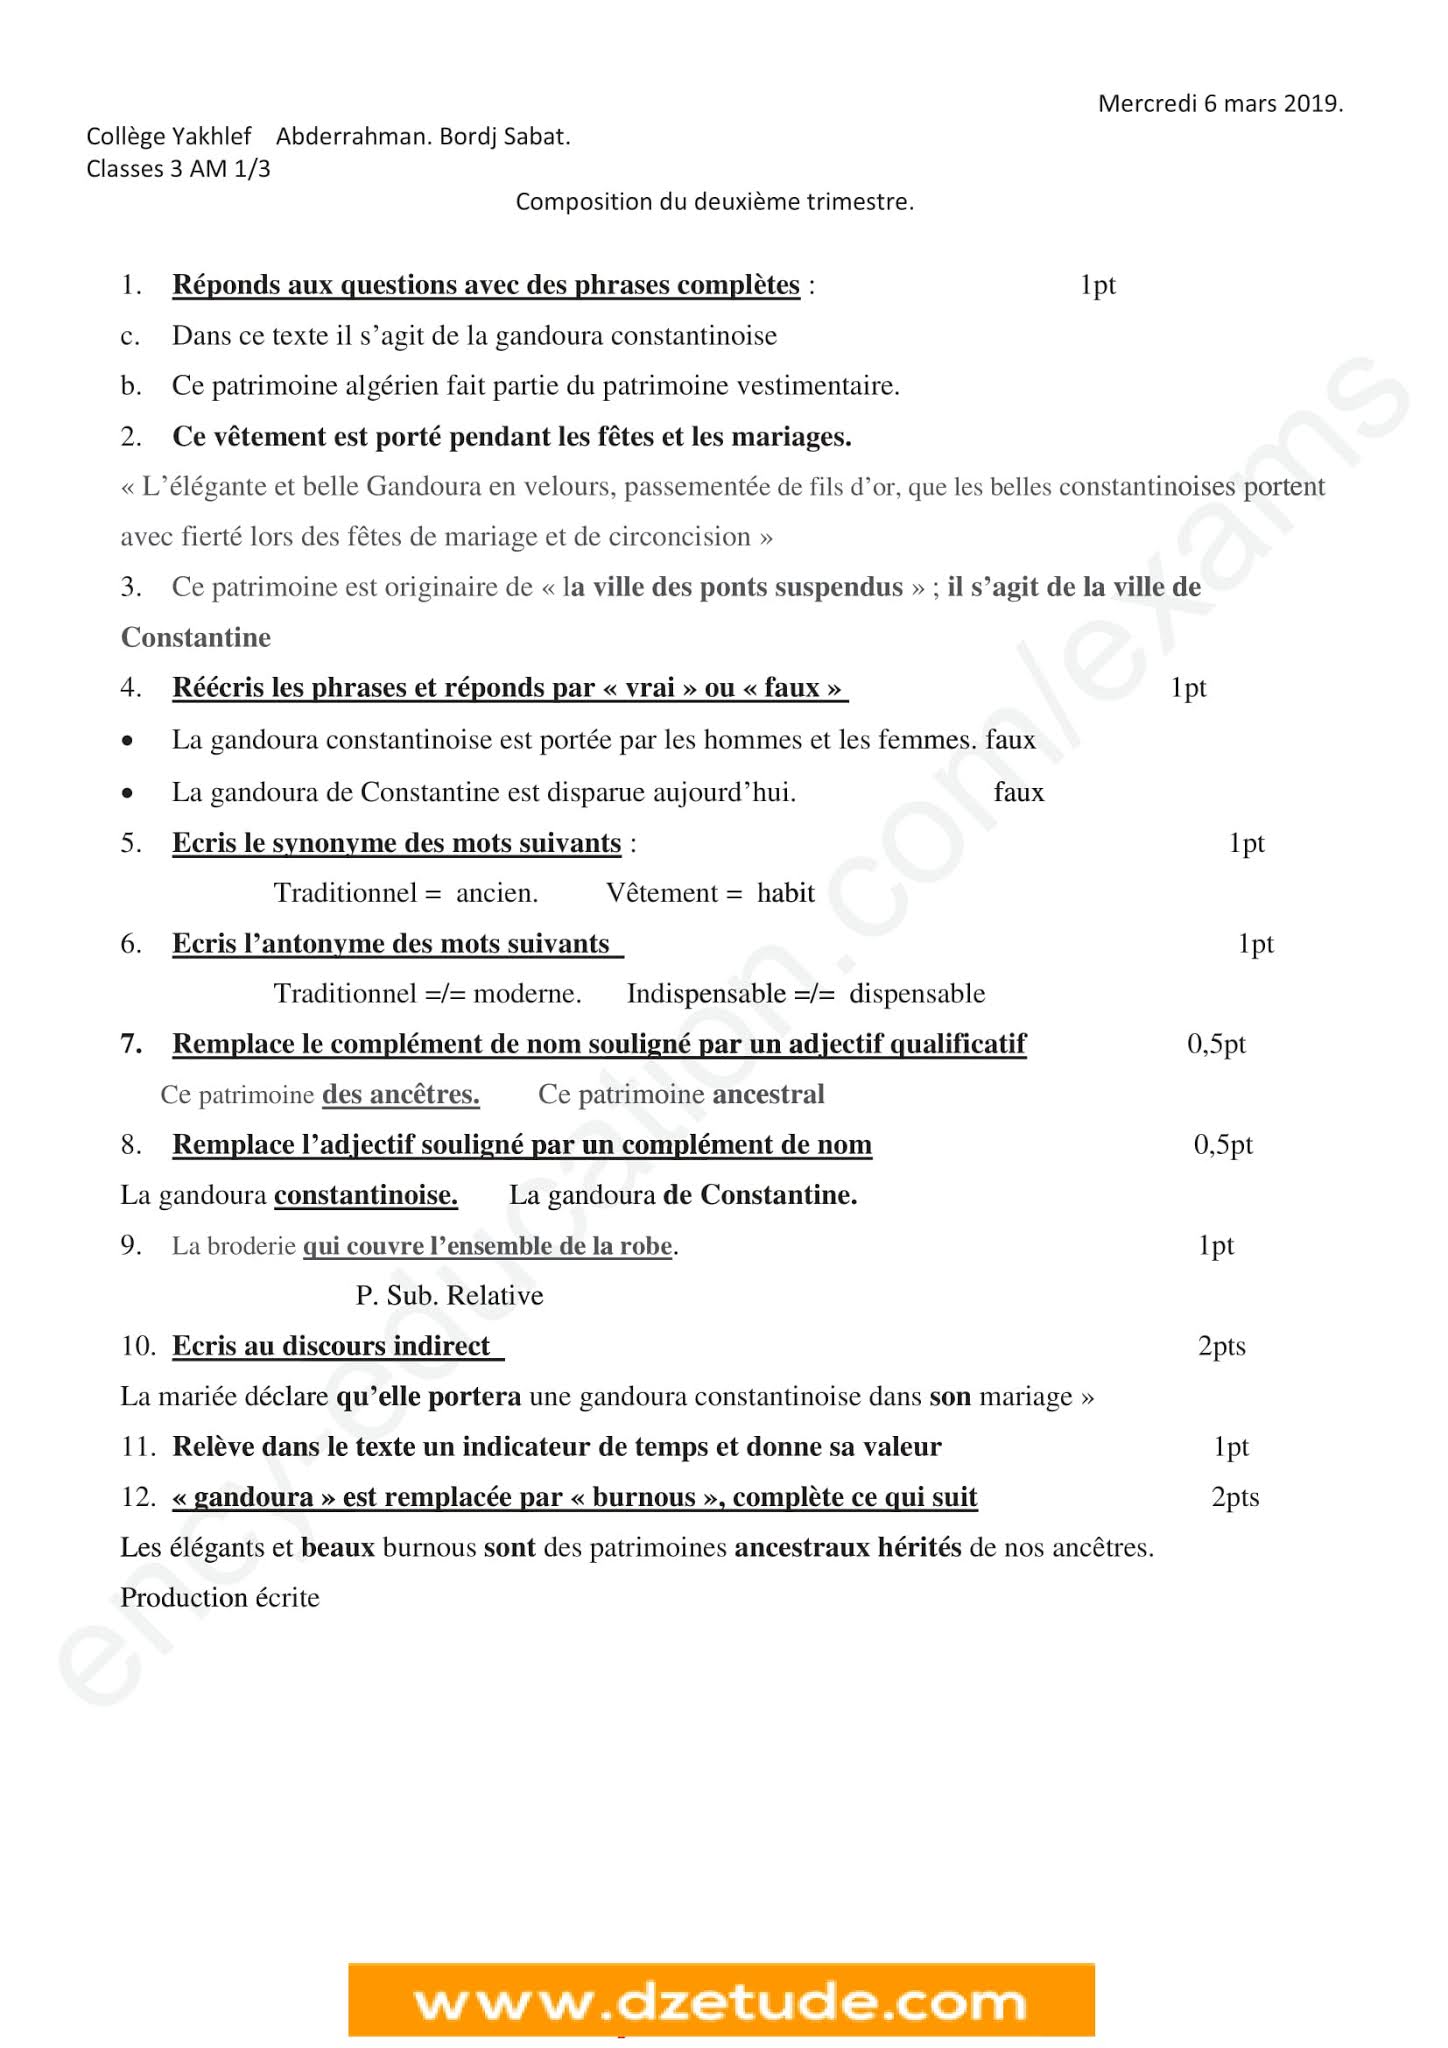 إختبار اللغة الفرنسية الفصل الثاني للسنة الثالثة متوسط - الجيل الثاني نموذج 2